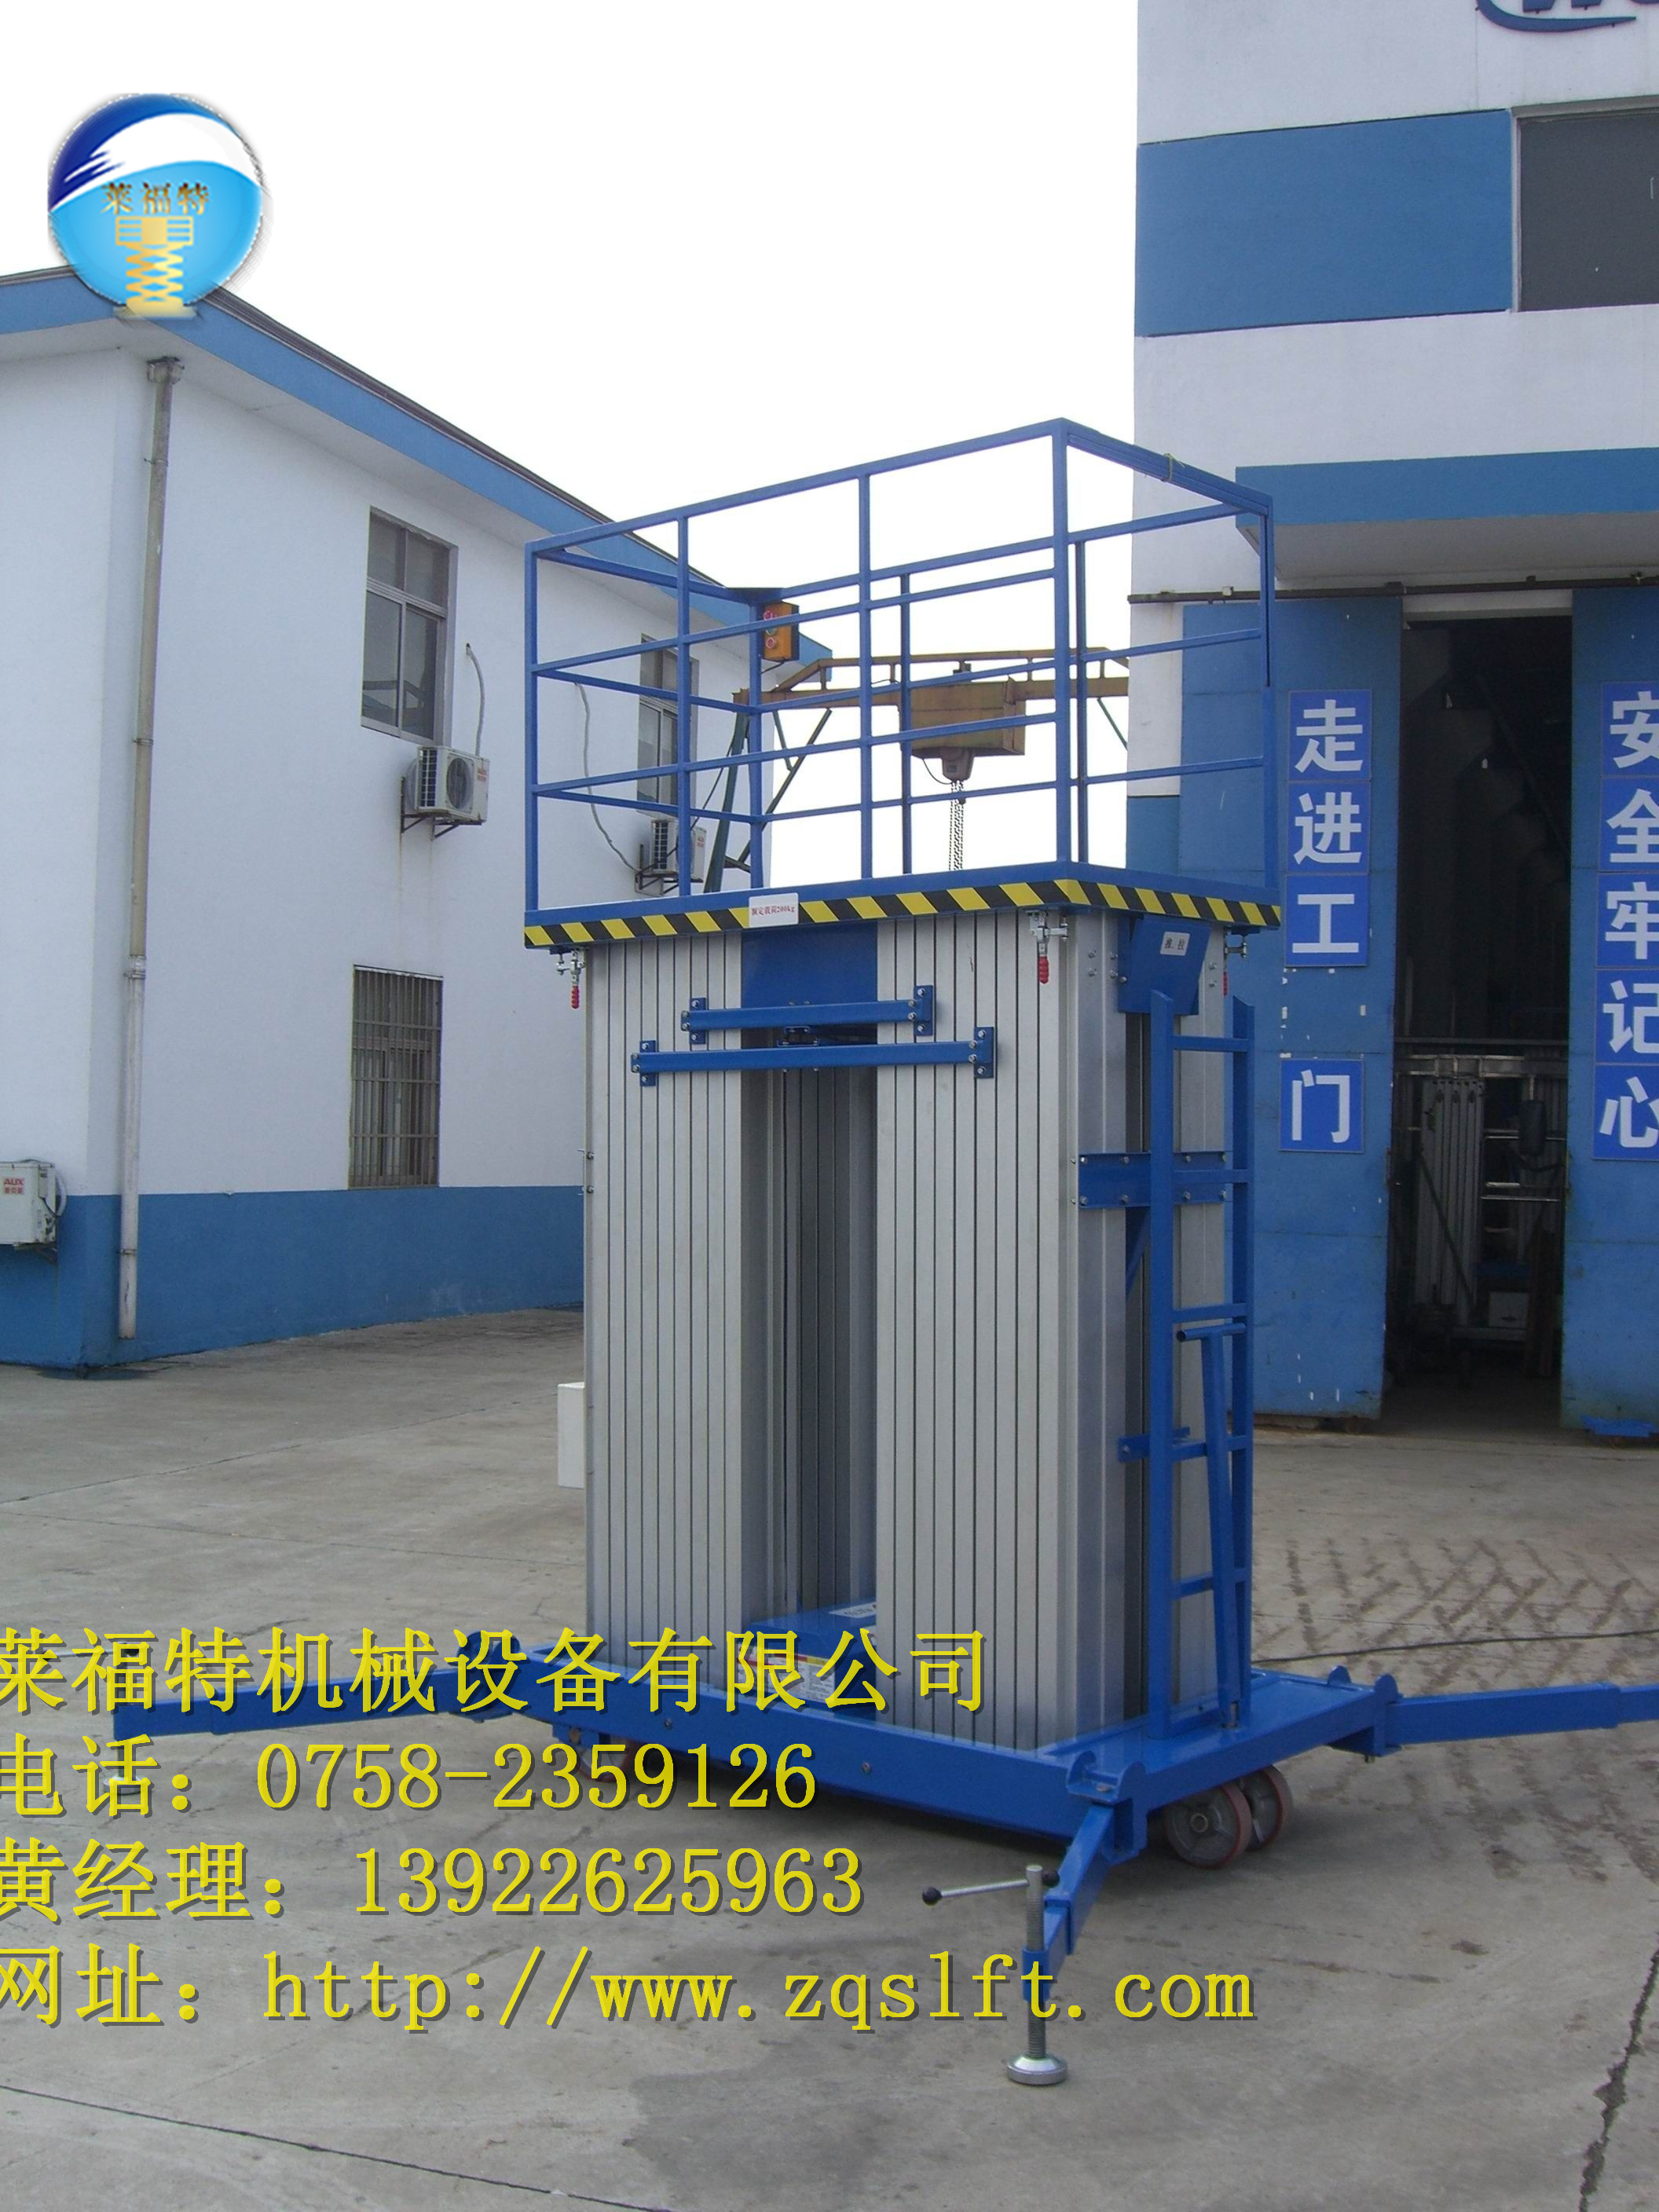 肇庆市移动式铝合金液压升降平台厂家